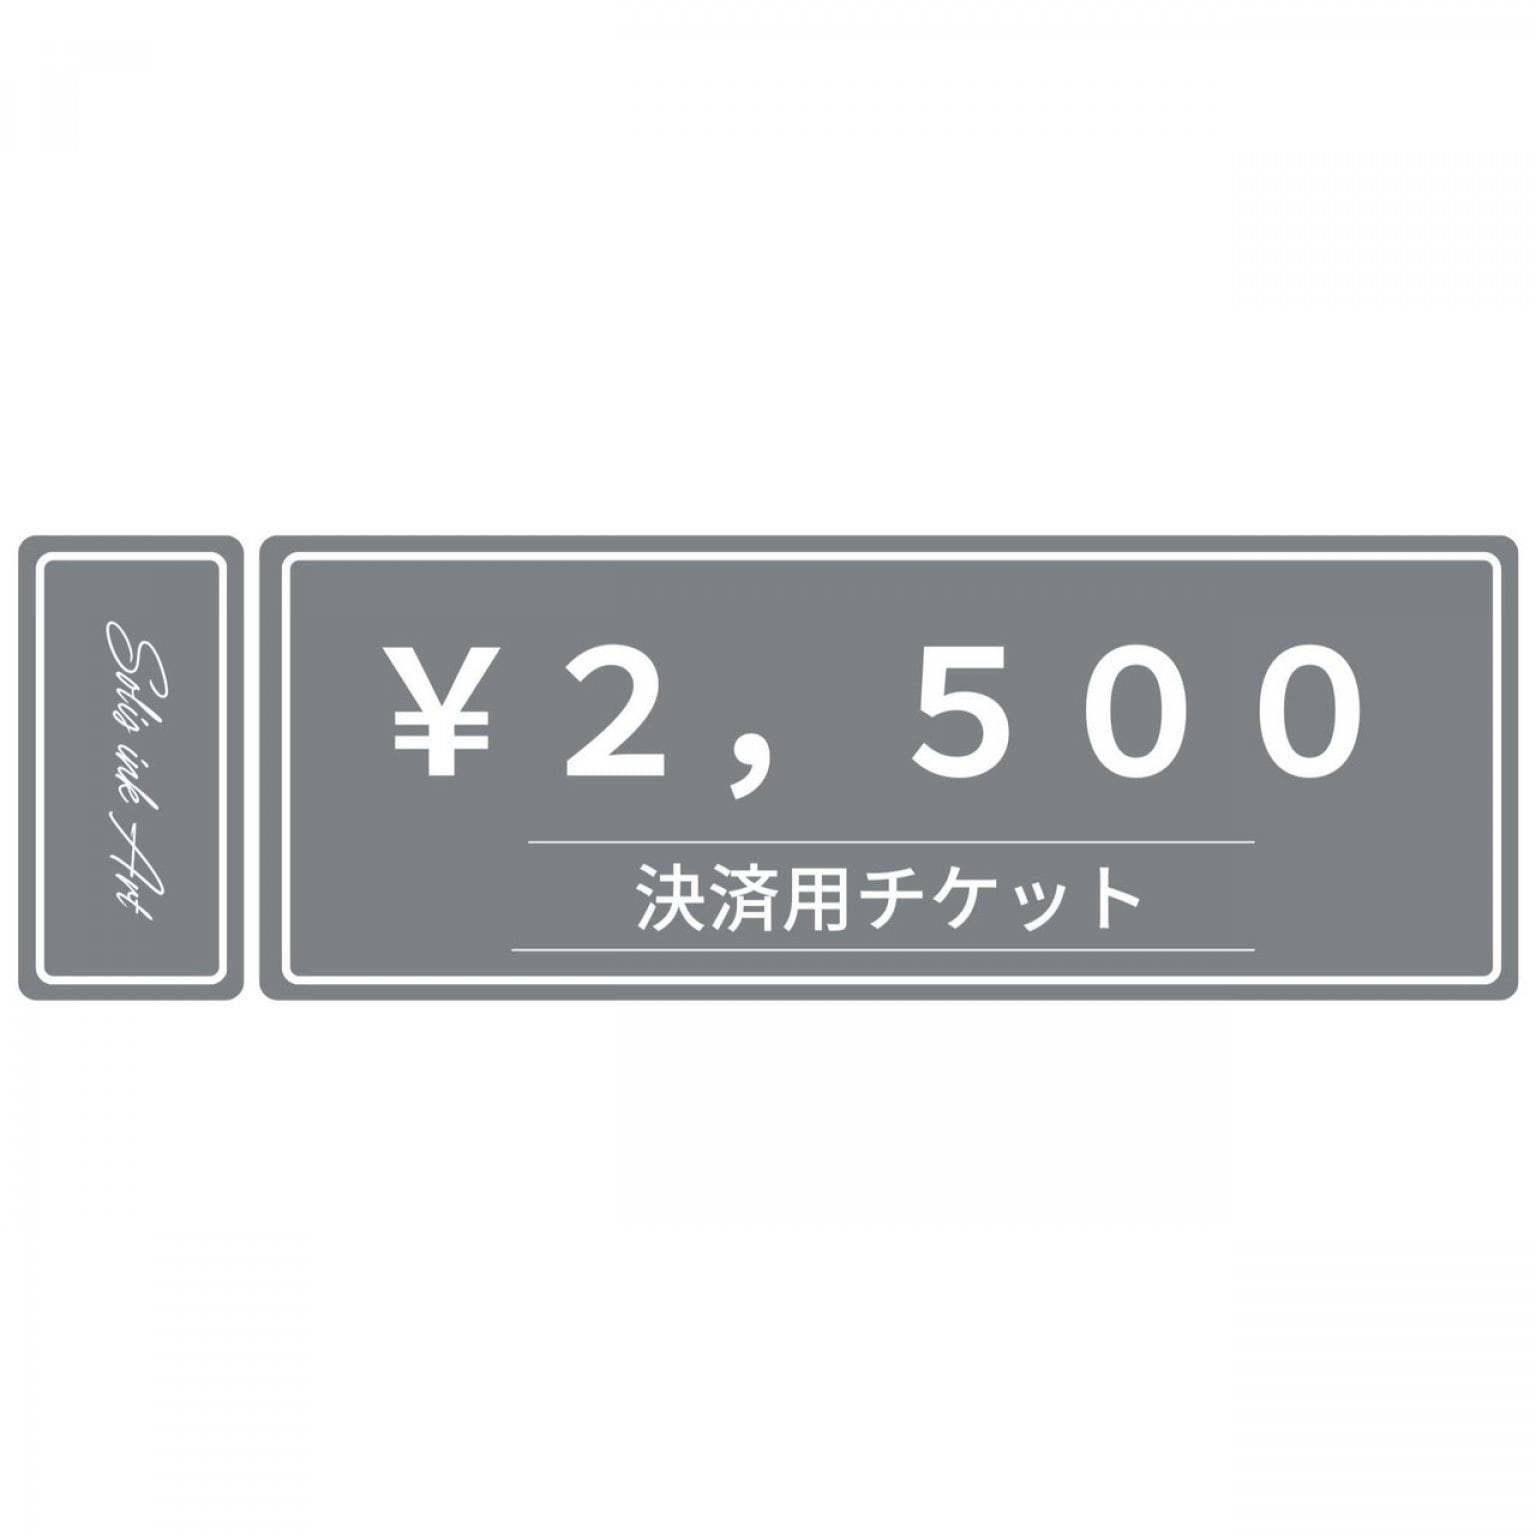 決済用チケット２，５００円